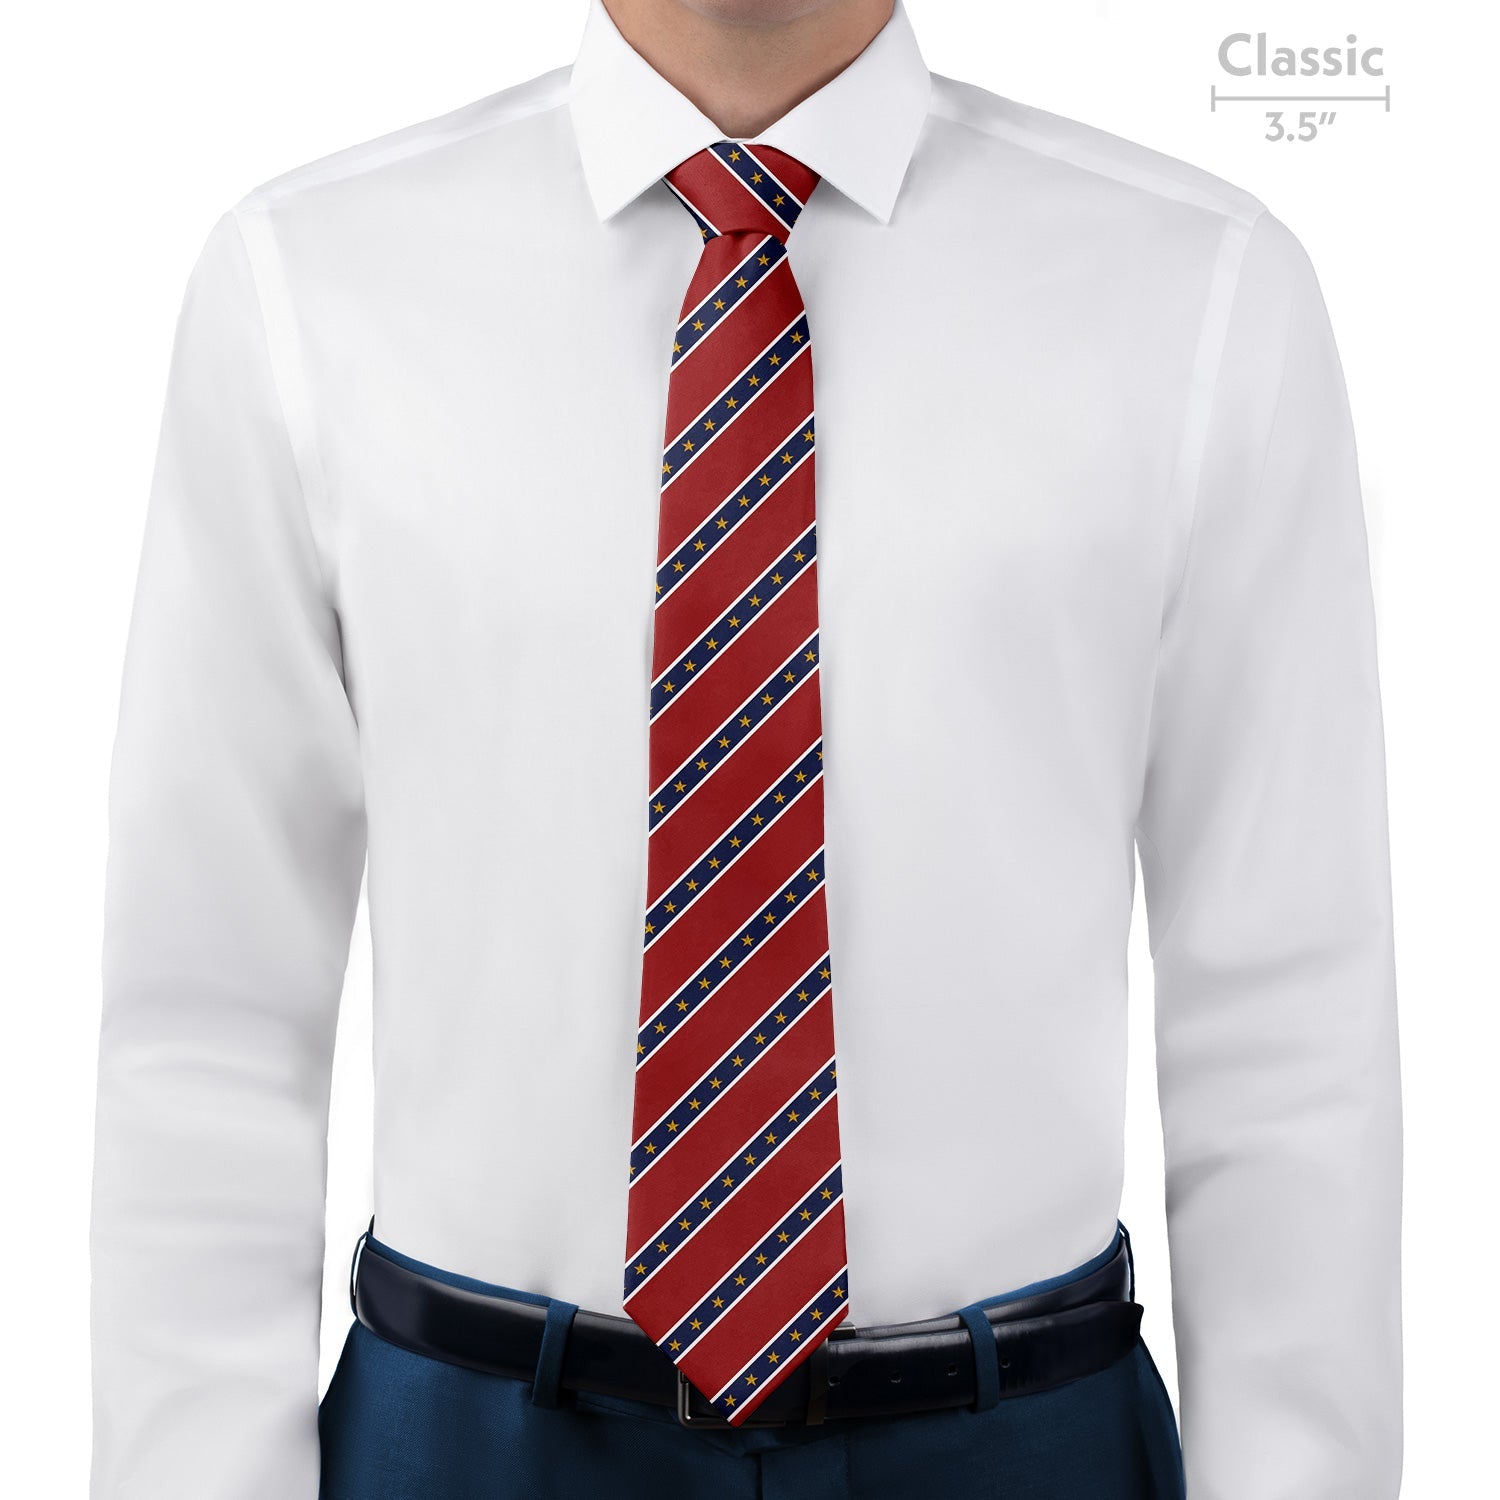 Stars in Stripes Necktie - Classic - Knotty Tie Co.